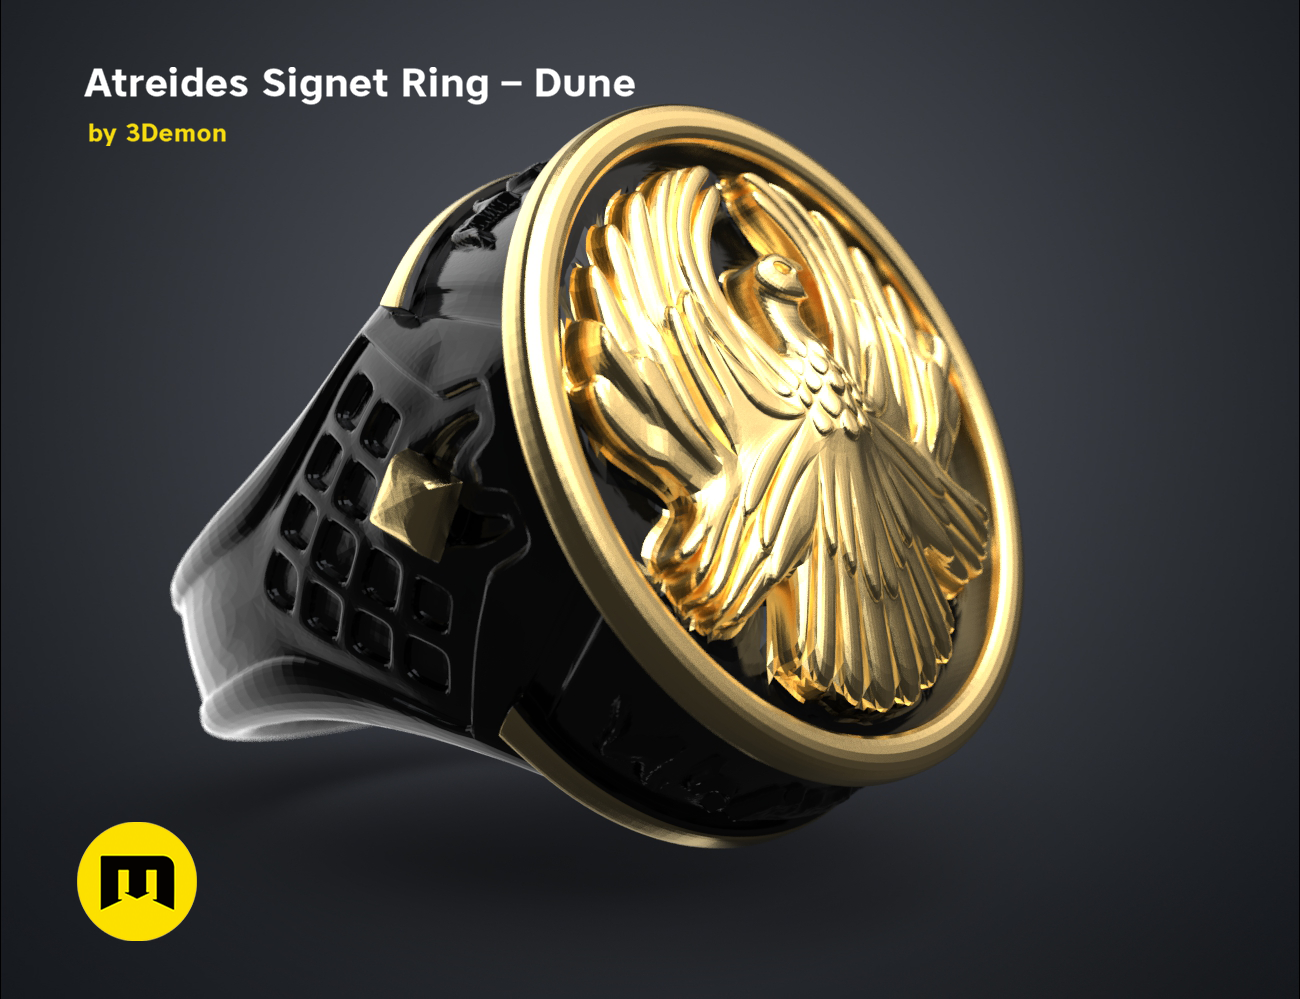 Atreides-ring-color.4.png Download free STL file Atreides Signet Ring - Dune • 3D printing template, 3D-mon